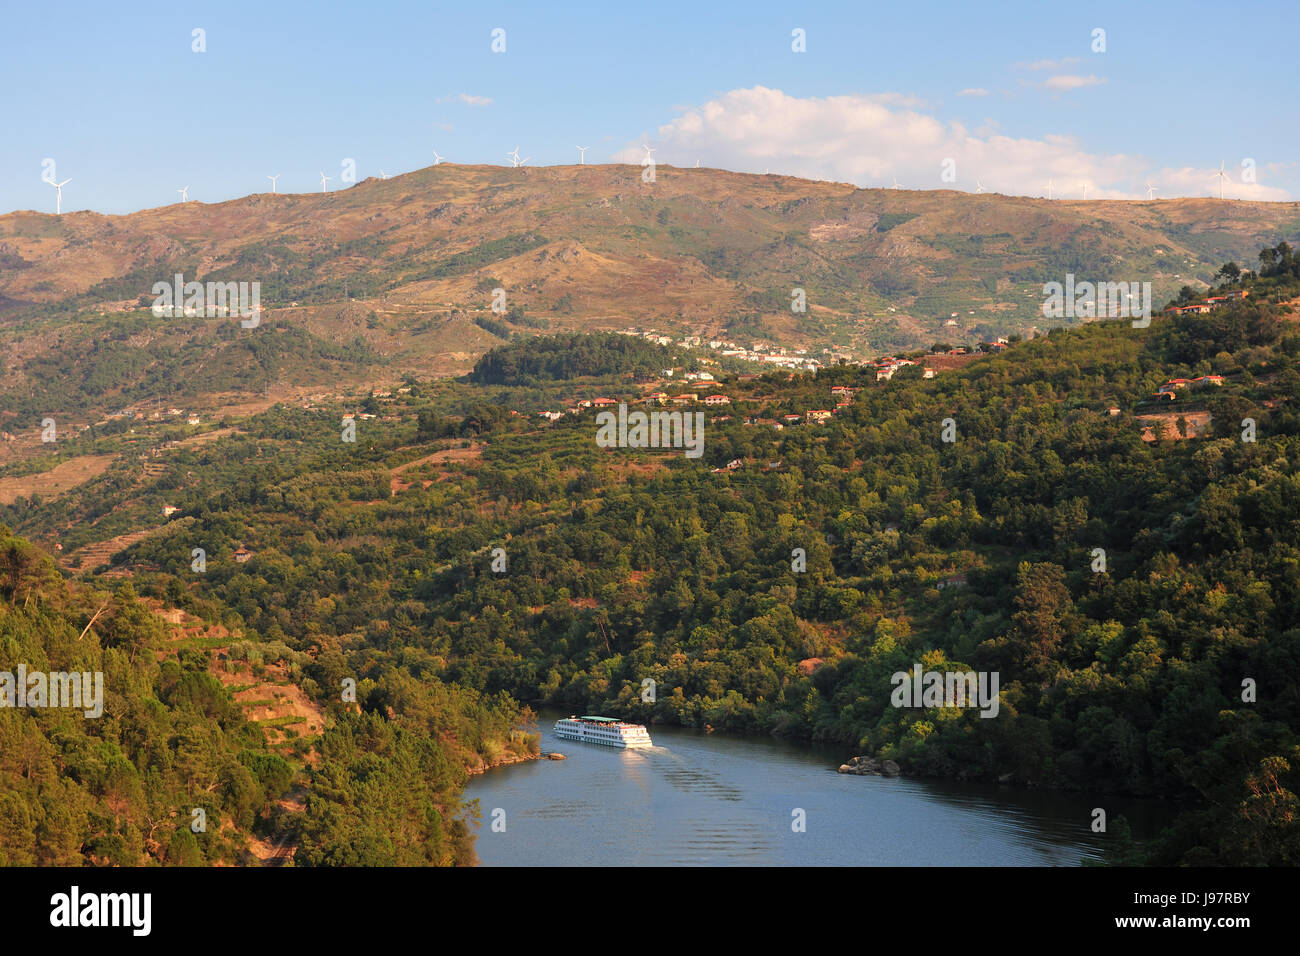 Die Douro-Fluss und ein Hotel-Schiff in der Nähe von Resende und Montemuro Berge, Portugal Stockfoto